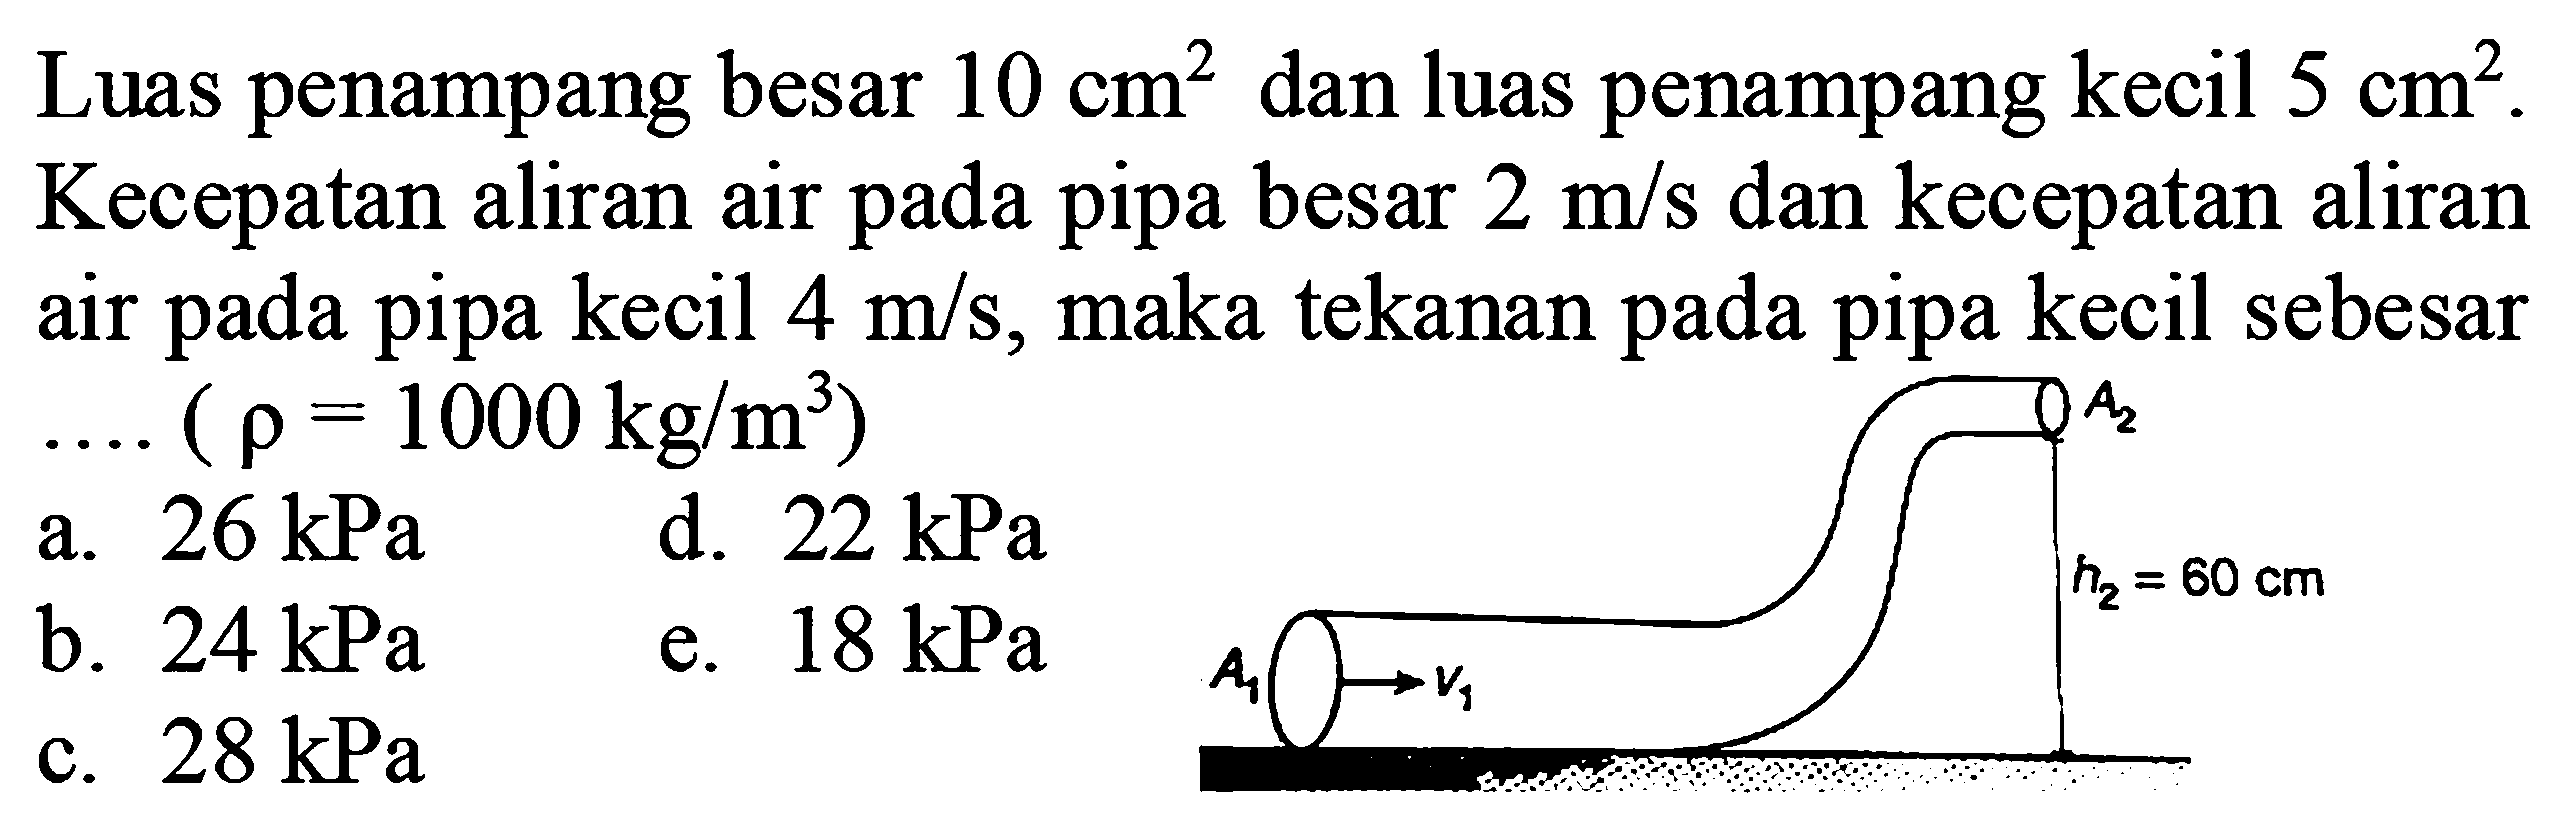 Luas penampang besar 10 cm^2 dan luas penampang kecil 5 cm^2. Kecepatan aliran air pada pipa besar 2 m/s dan kecepatan aliran air pada pipa kecil 4 m/s, maka tekanan pada pipa kecil sebesar .... (rho=1000 kg/m^3) A1 v1 A2 h2=60 cm a. 26 kPa b. 24 kPa c. 28 kPa d. 22 kPa e. 18 kPa 